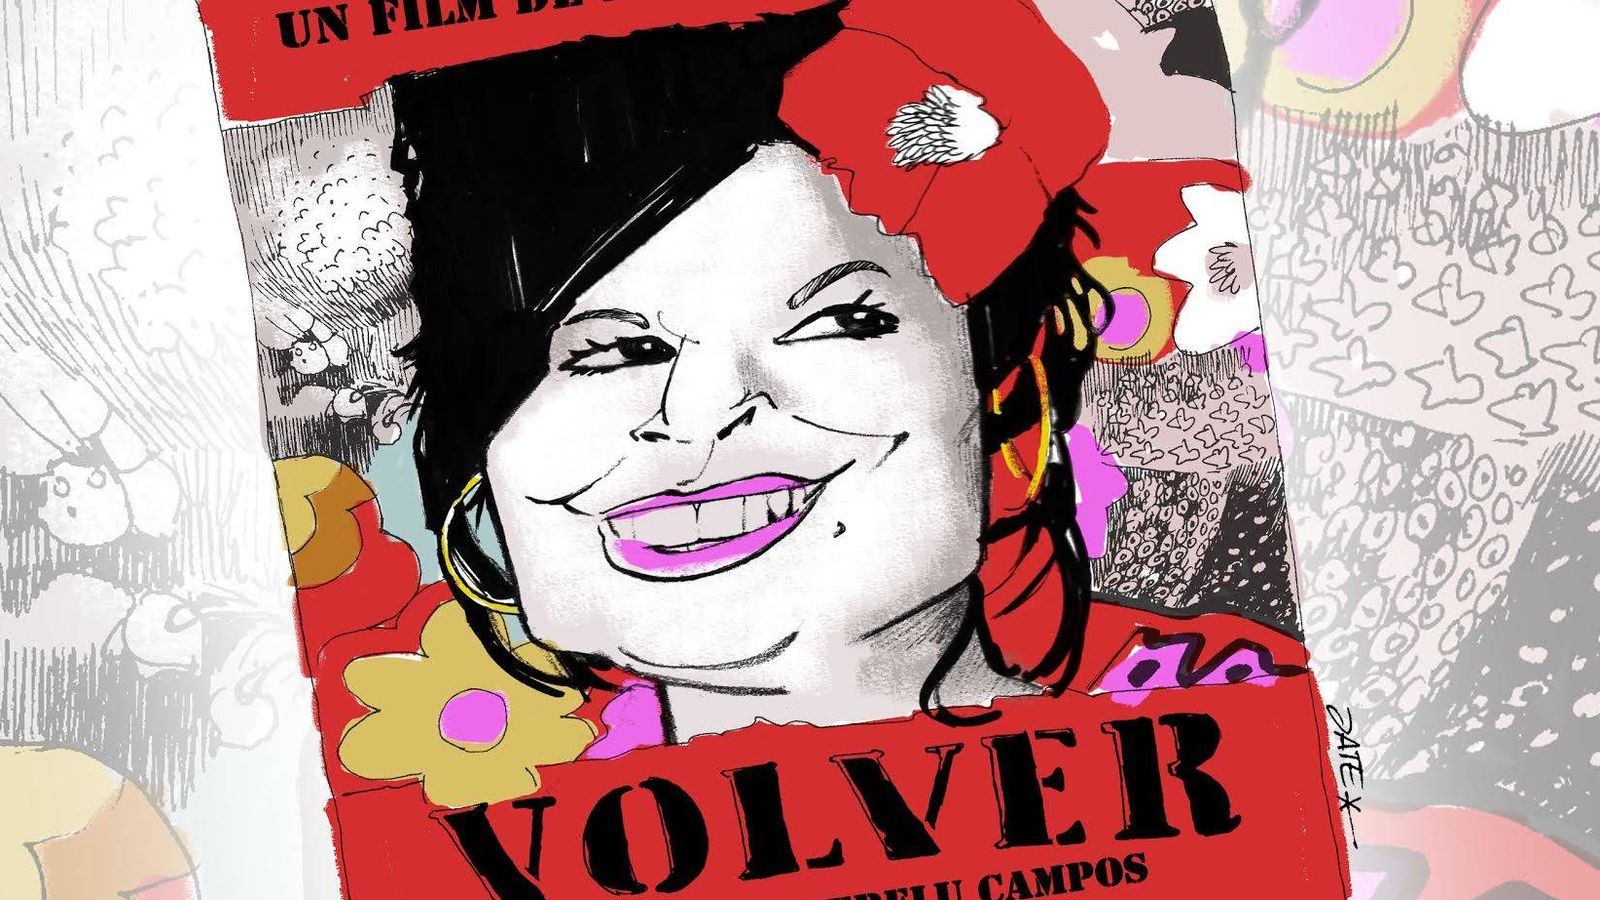 Foto: Terelu Campos en el cartel de 'Volver', de Almodóvar. Ilustración realizada por Jate para Vanitatis